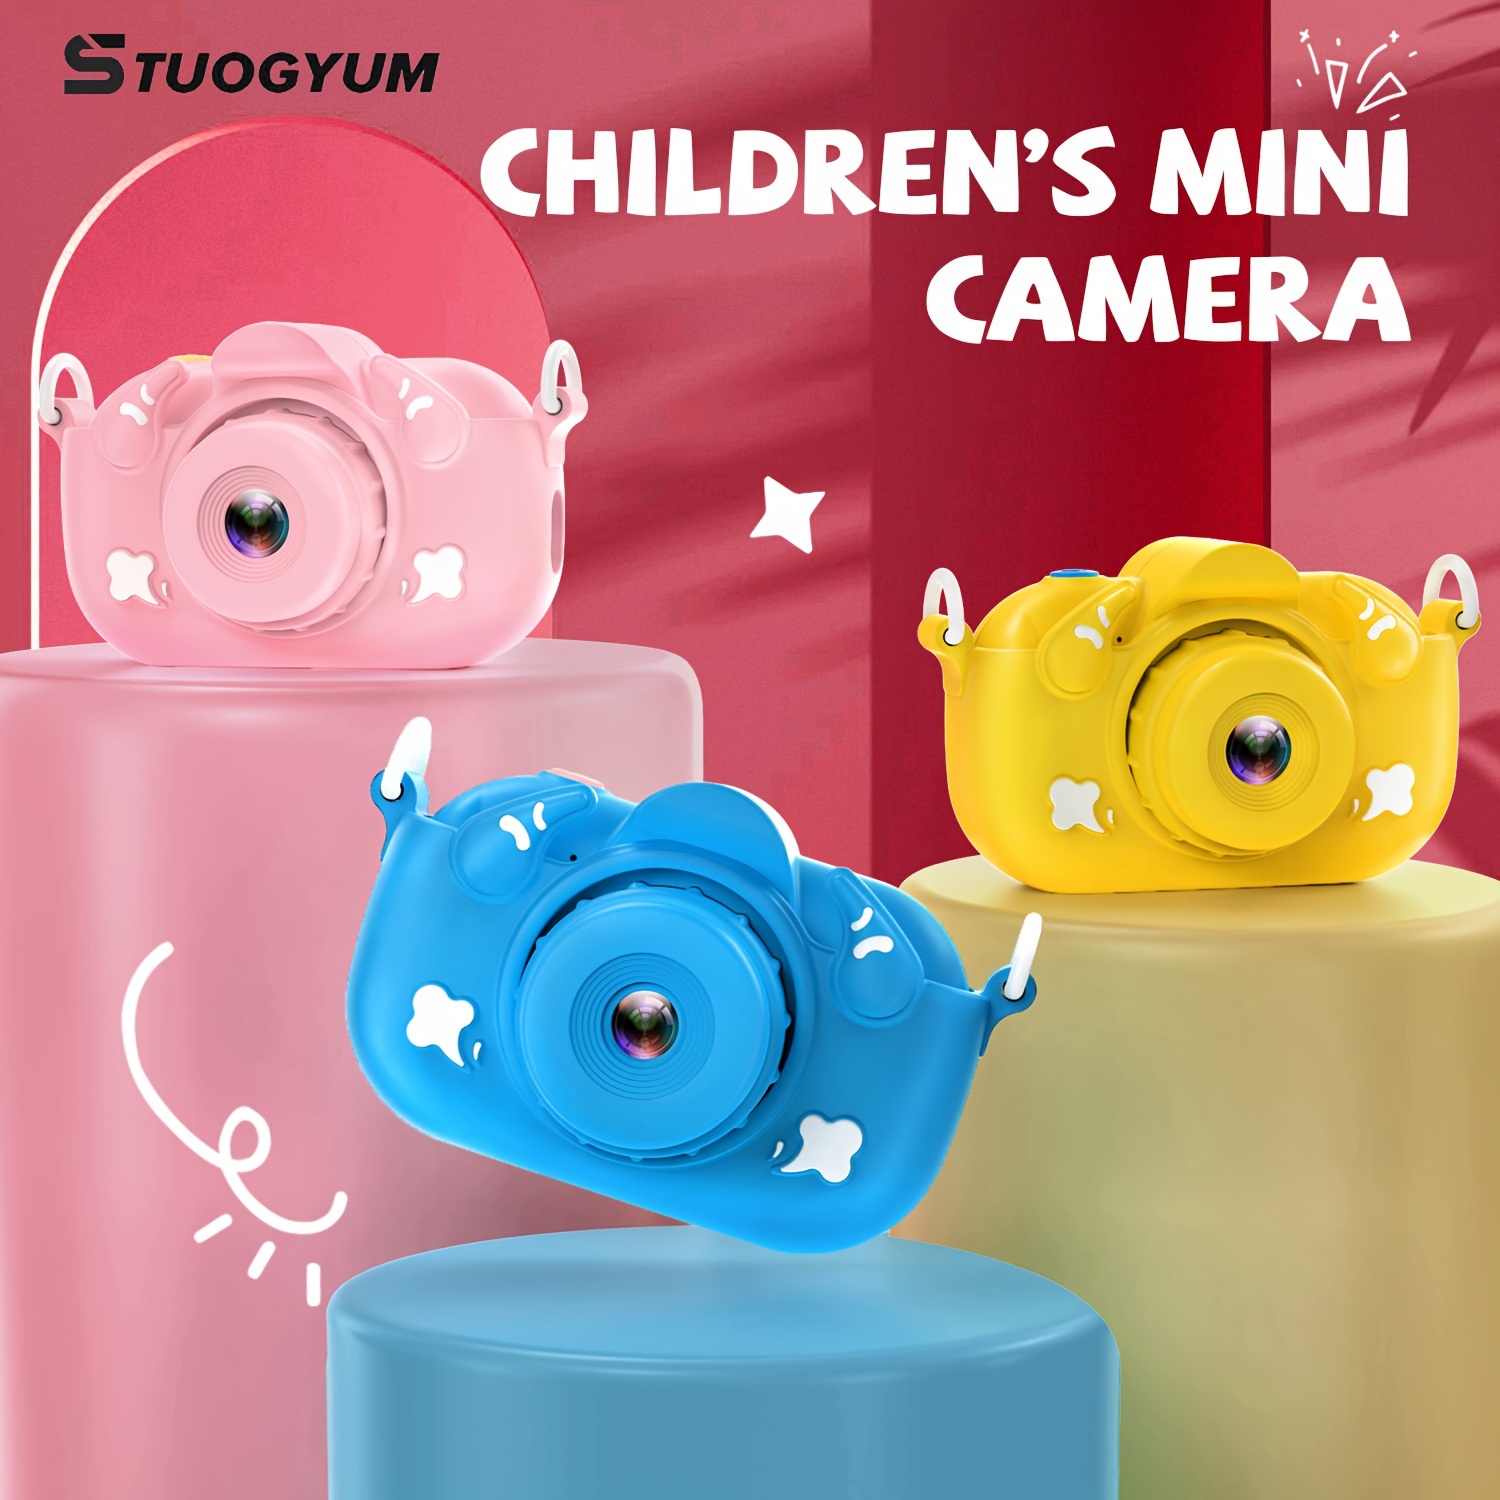 C3 fotocamera per bambini per fotocamera fotografica istantanea Polaroid  fotocamera per bambini Mini giocattoli per fotocamera digitale Polaroid  come regalo